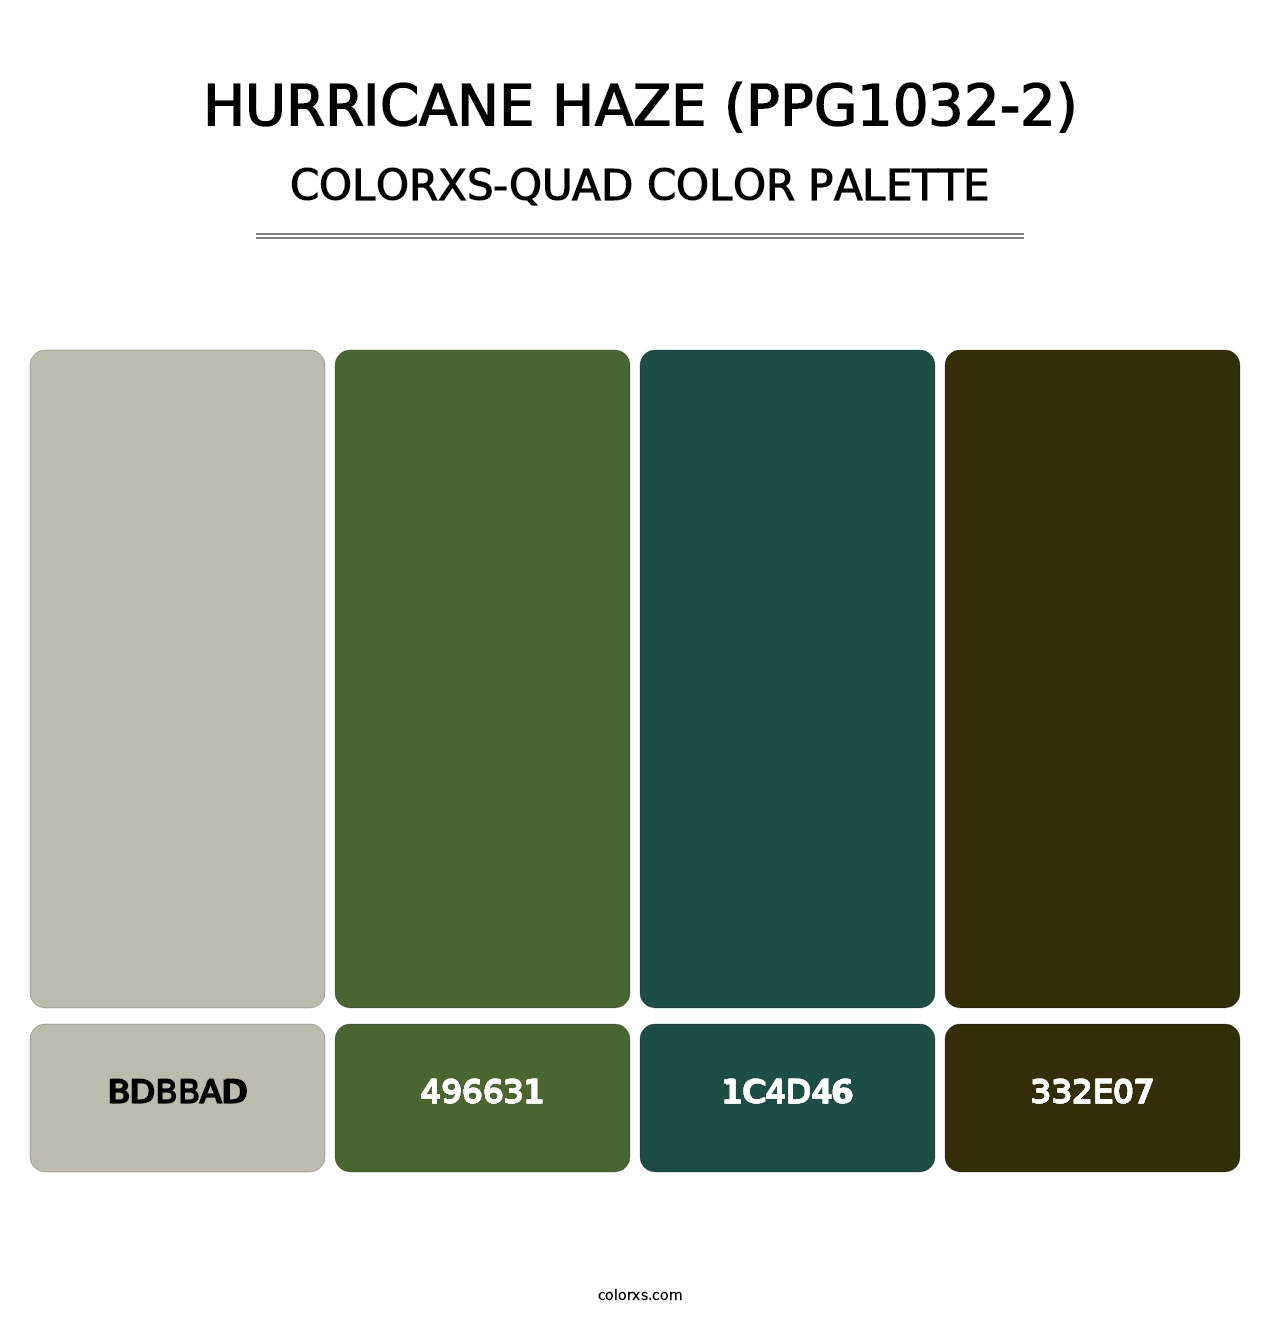 Hurricane Haze (PPG1032-2) - Colorxs Quad Palette